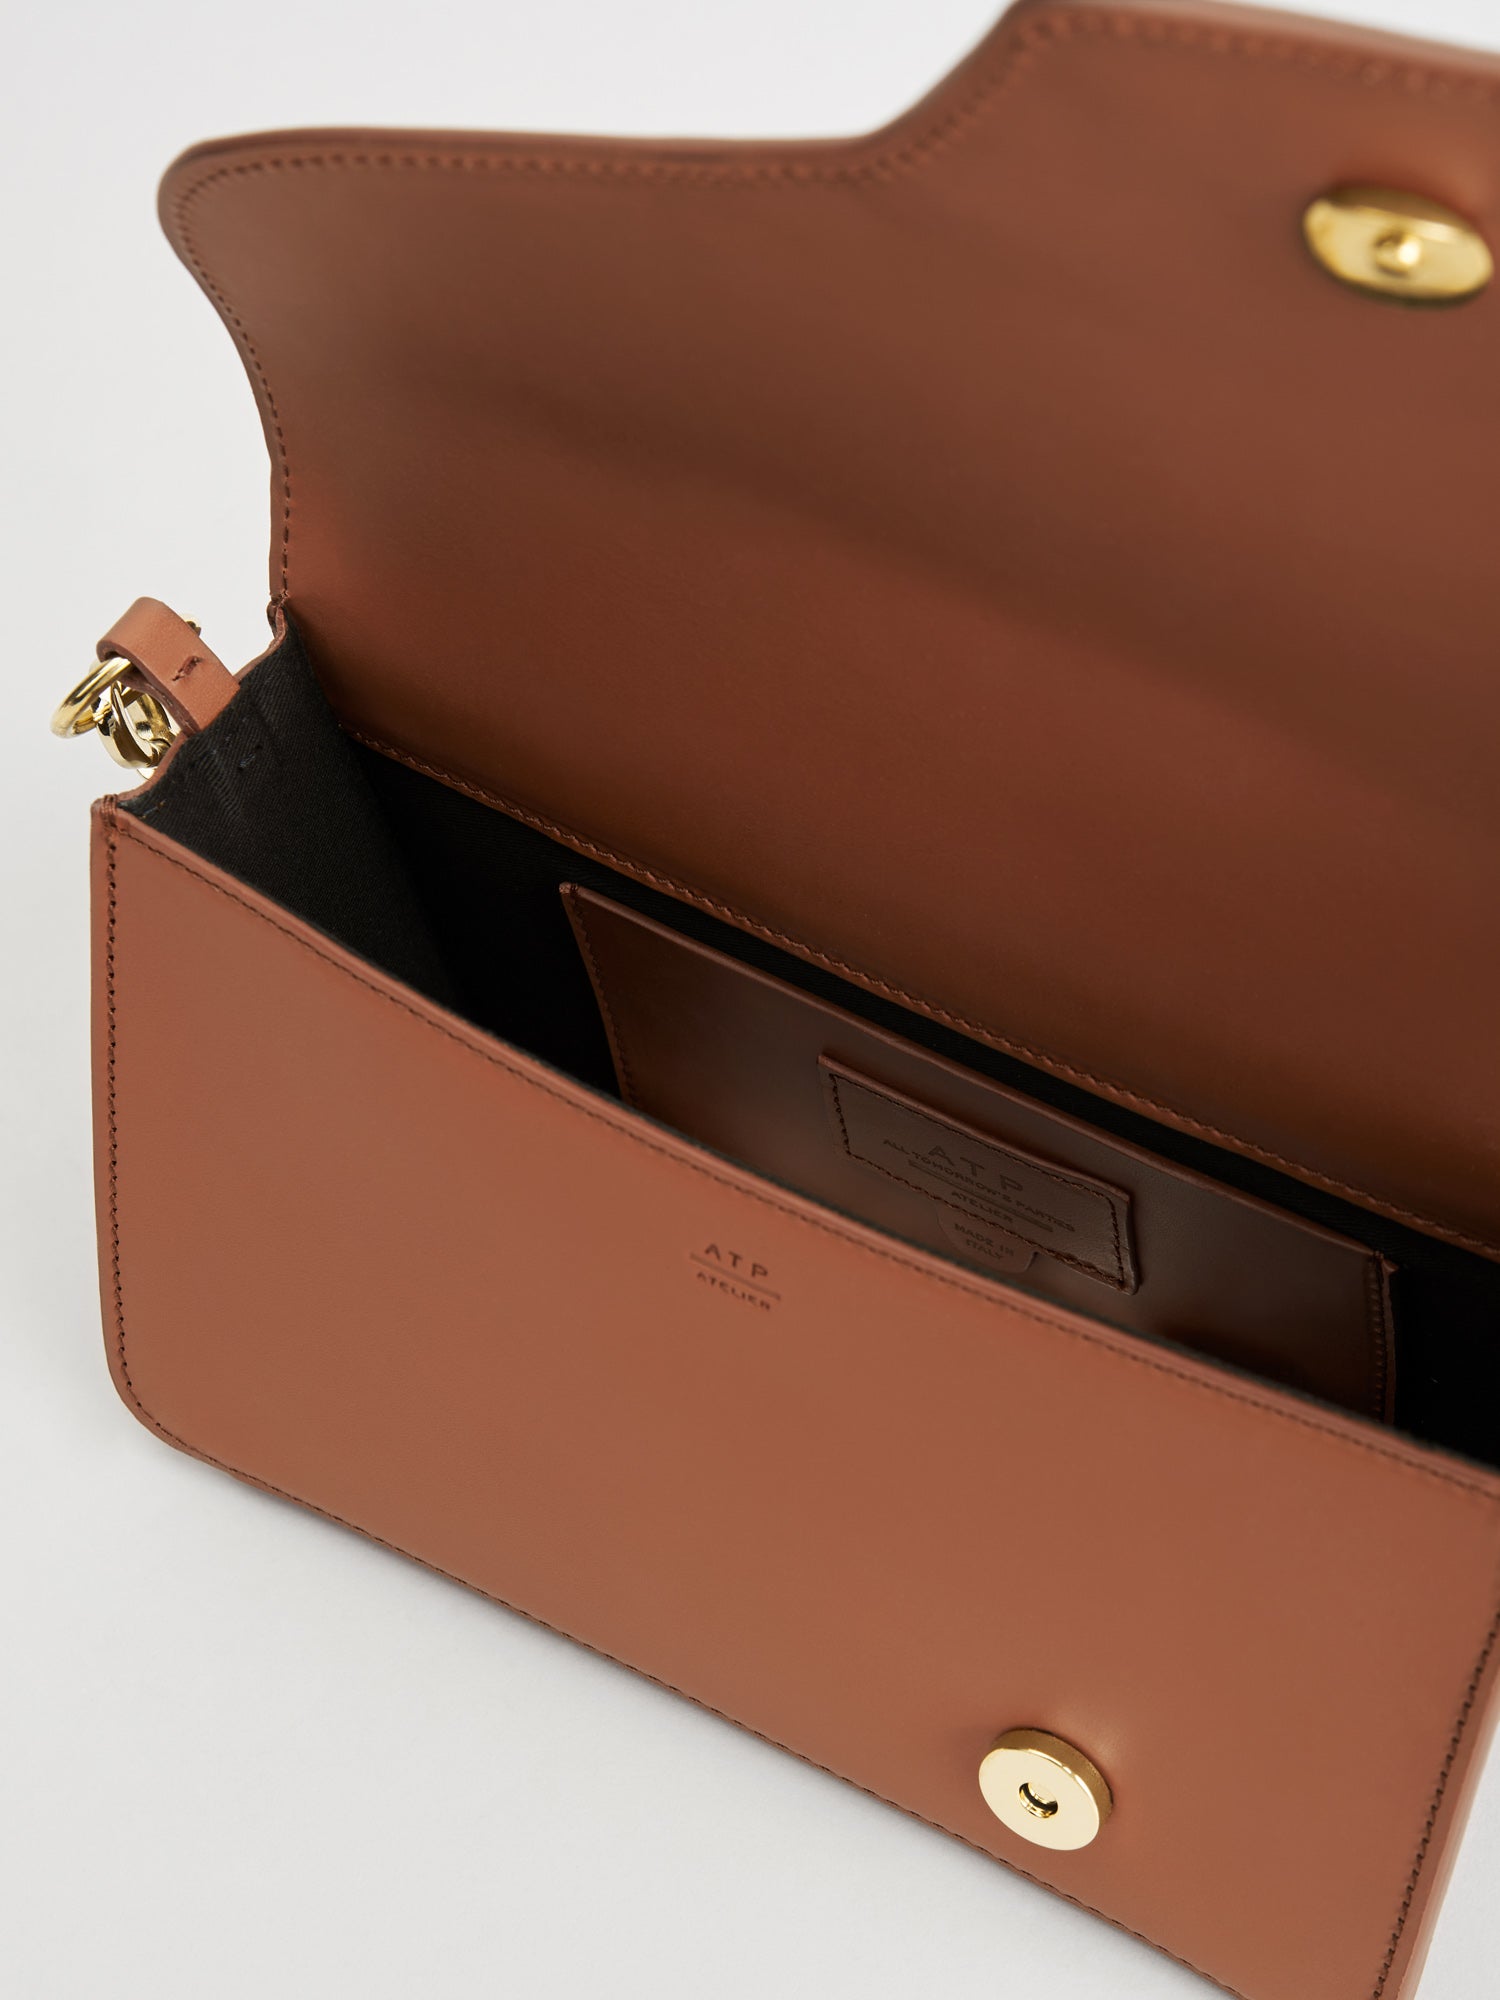 Assisi Brandy Leather Shoulder Bag